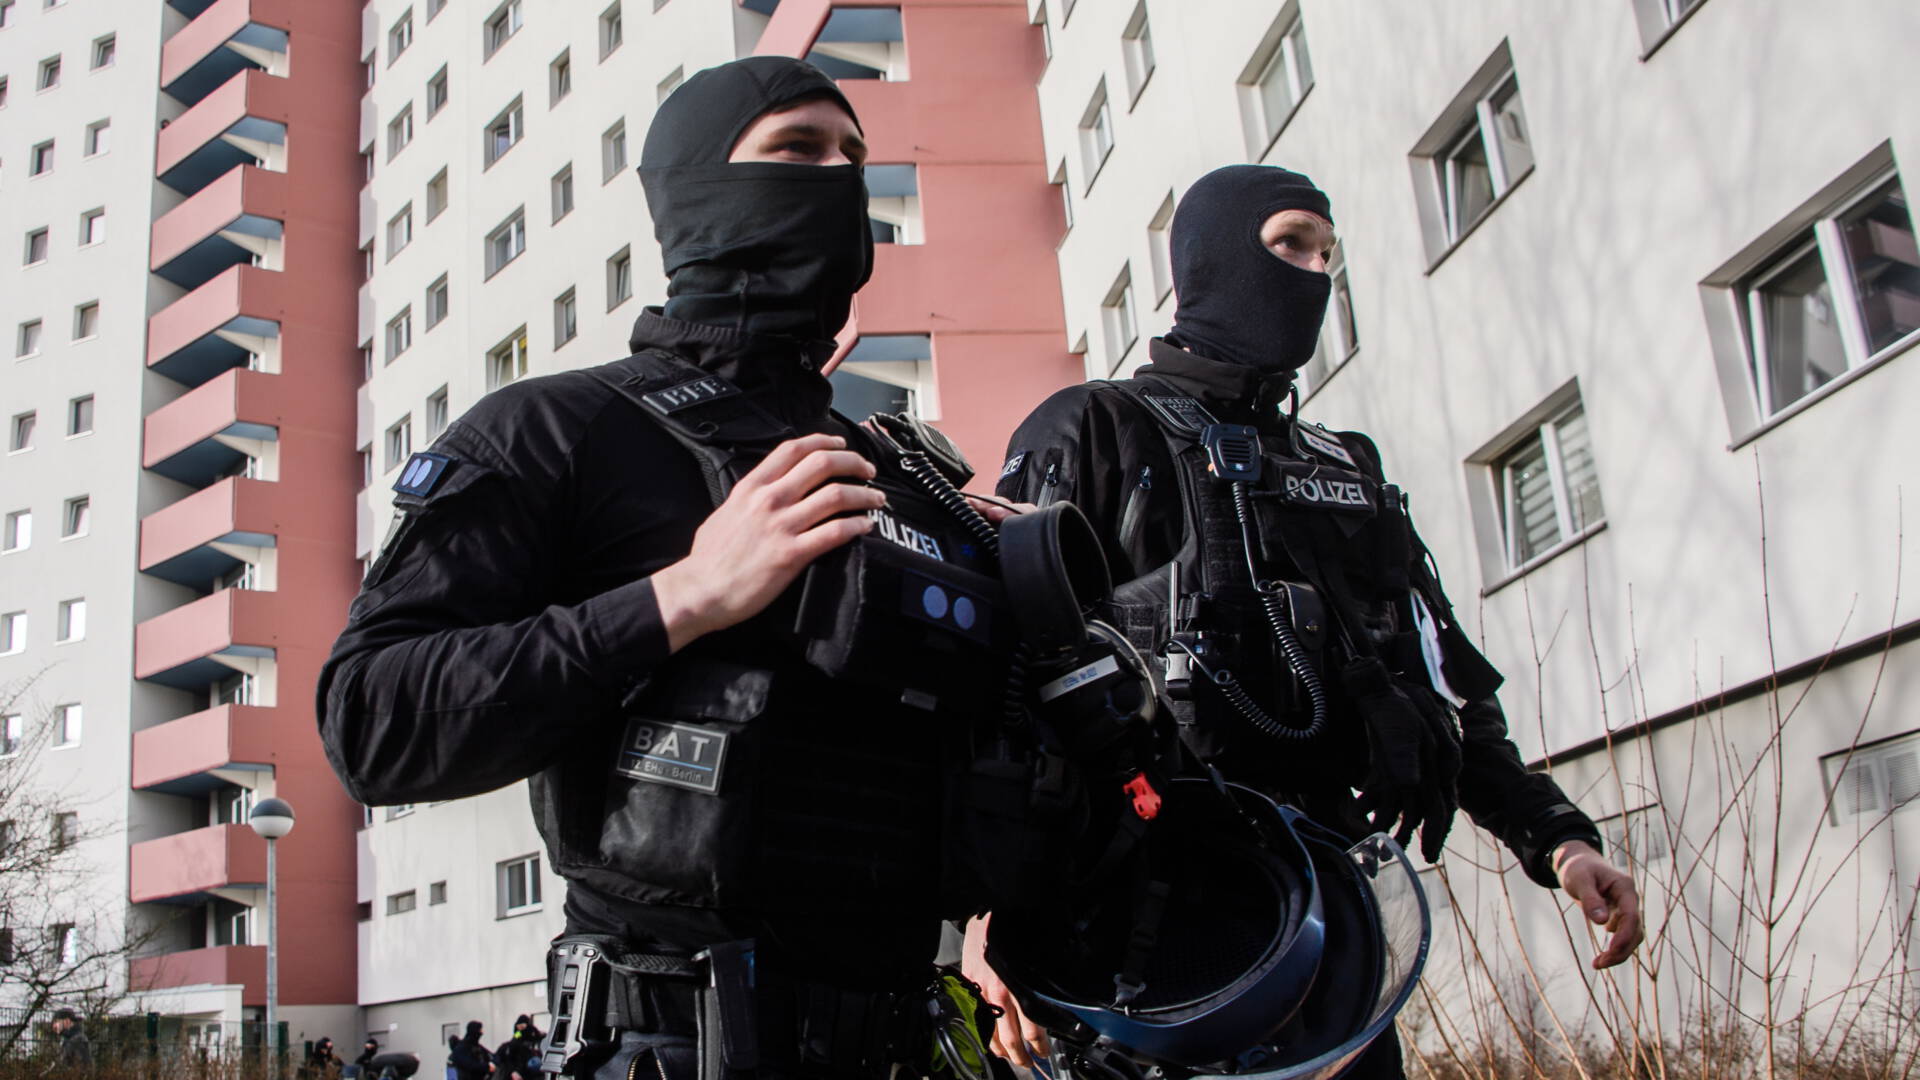 شبكة جهادية خطيرة في برلين تروج لعمليات "استشهادية" تقوم الشرطة بعمليات بحث عنها